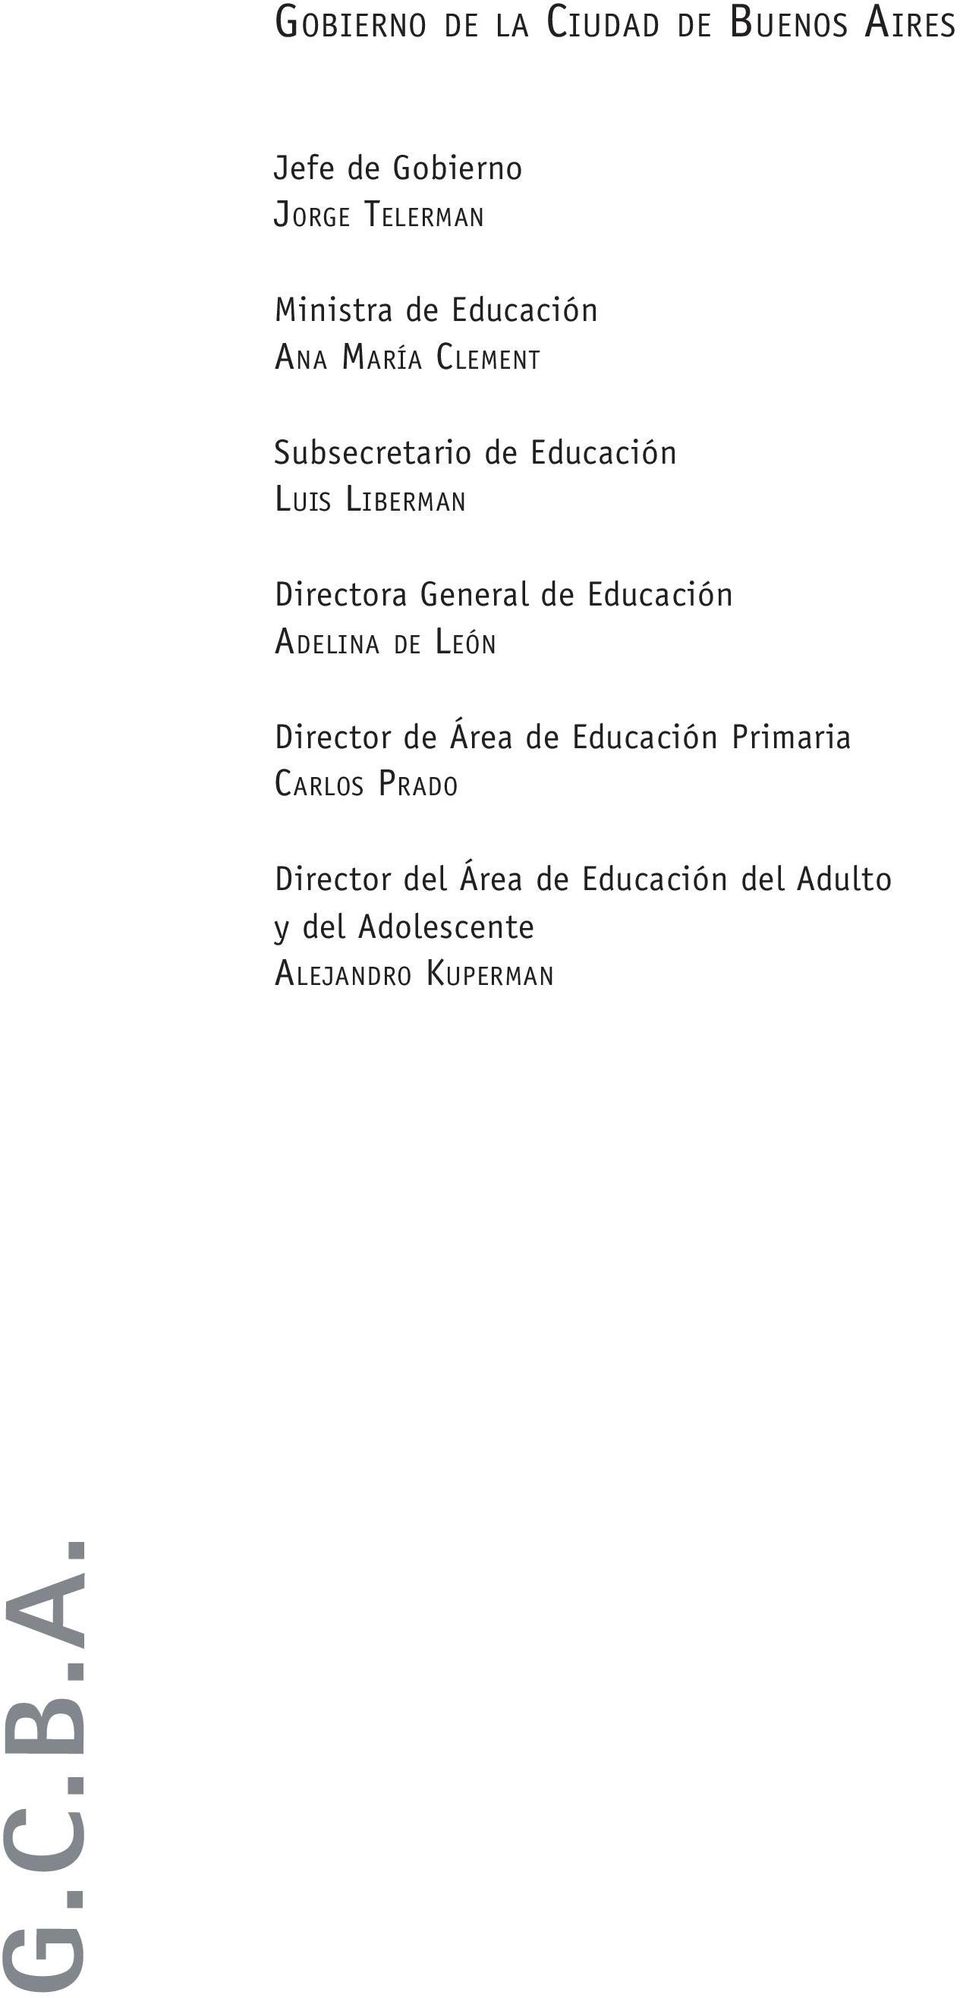 General de Educación ADELINA DE LEÓN Director de Área de Educación Primaria